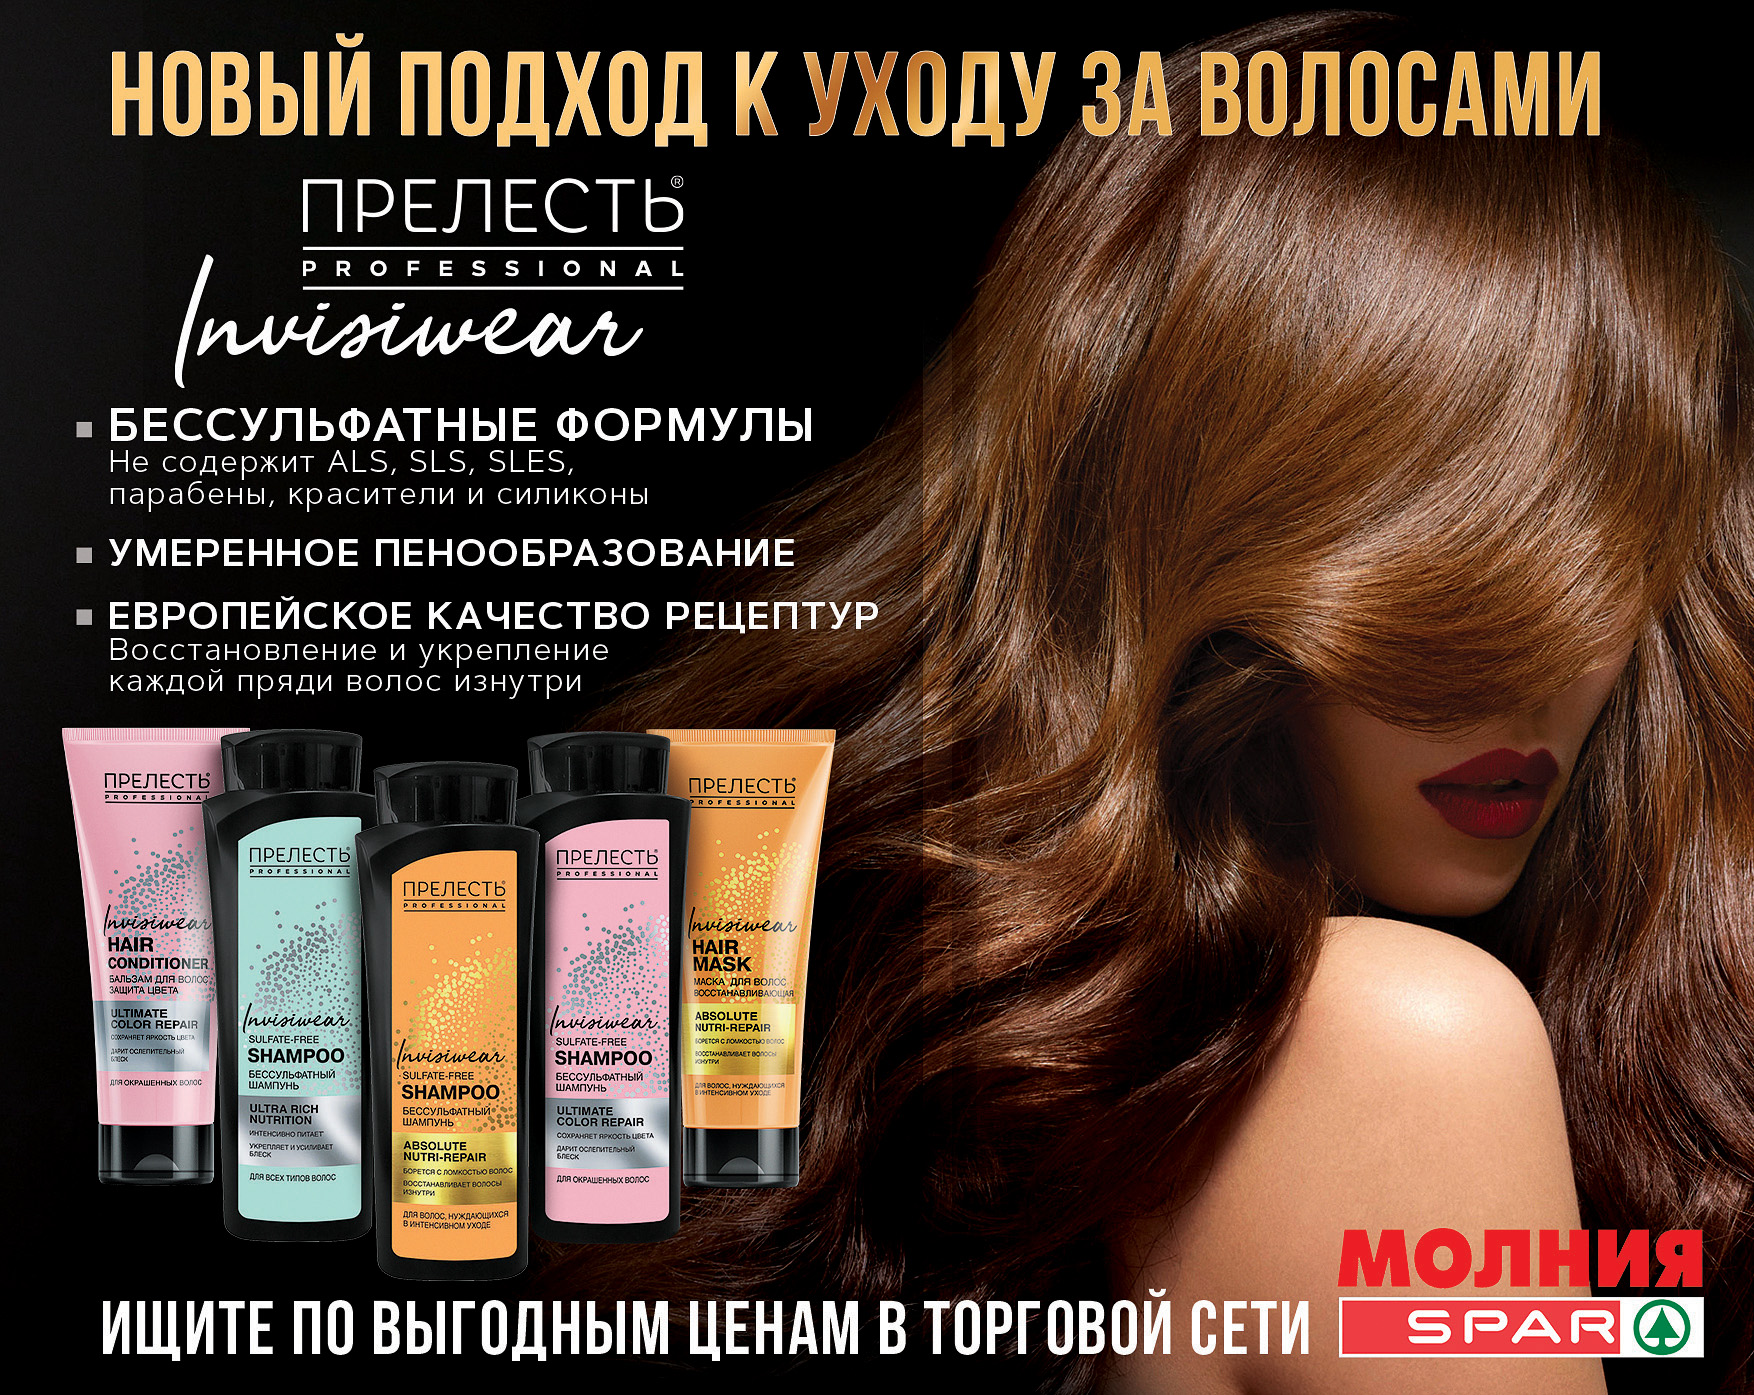 www.sparural.ru, официальный сайт Хотим познакомить Вас с новым подходом к уходу за волосами Сеть магазинов «Молния», «SPAR» в Челябинске